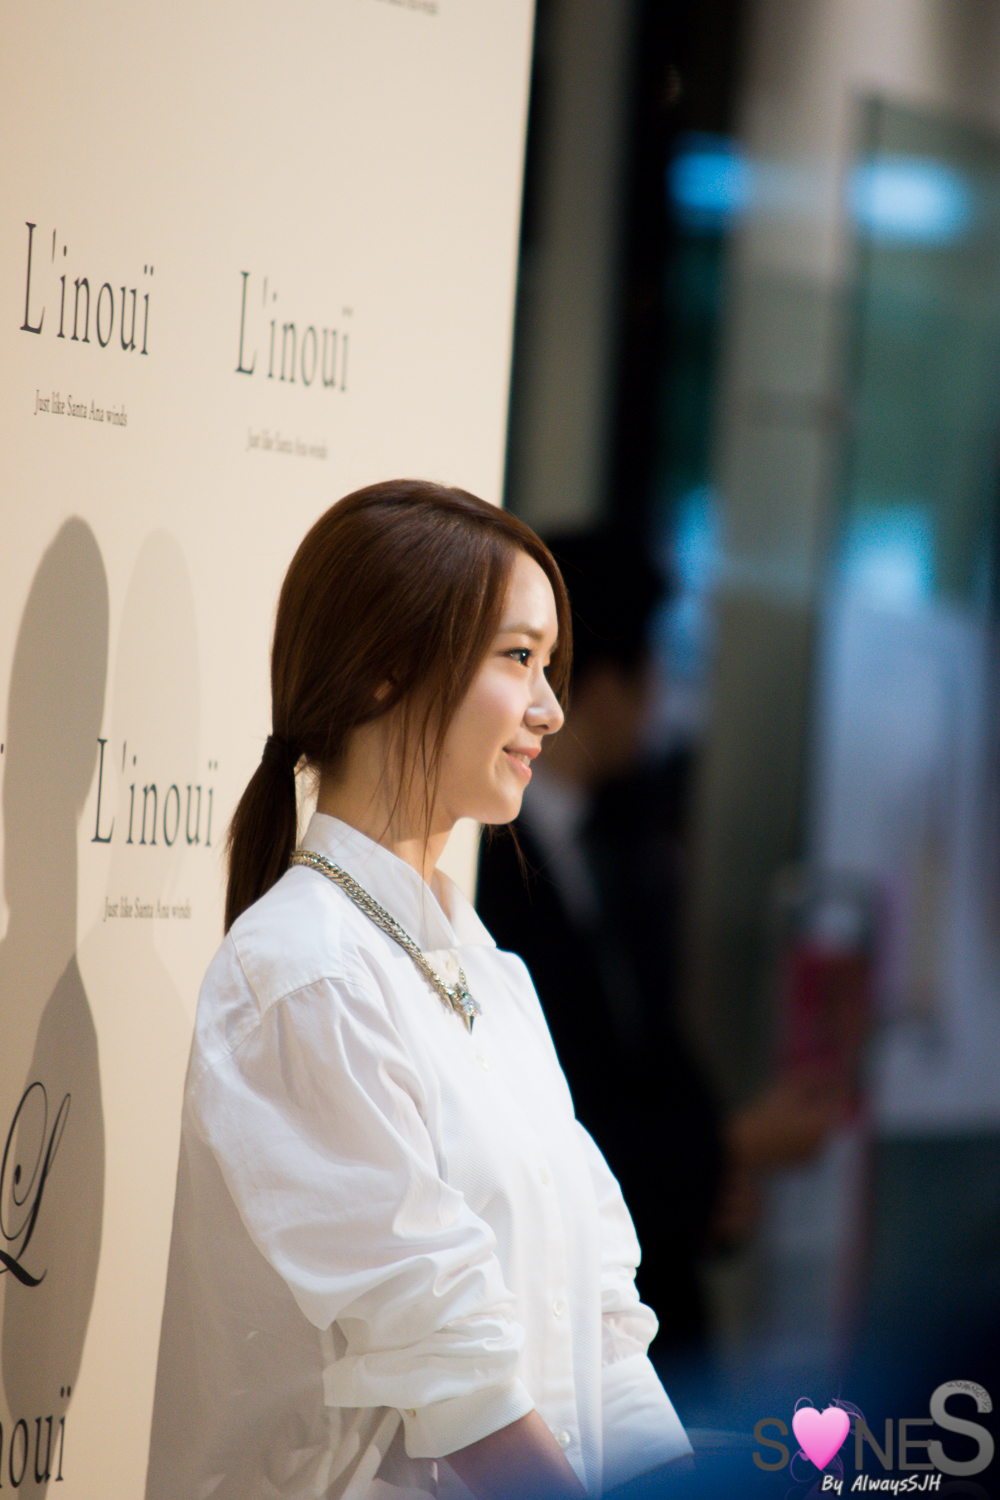 [PIC][31-08-2013]YoonA và Sunny tham dự sự kiện khai trương cửa hàng "L'inoui" vào chiều nay 2210864B5221FA9229DF11